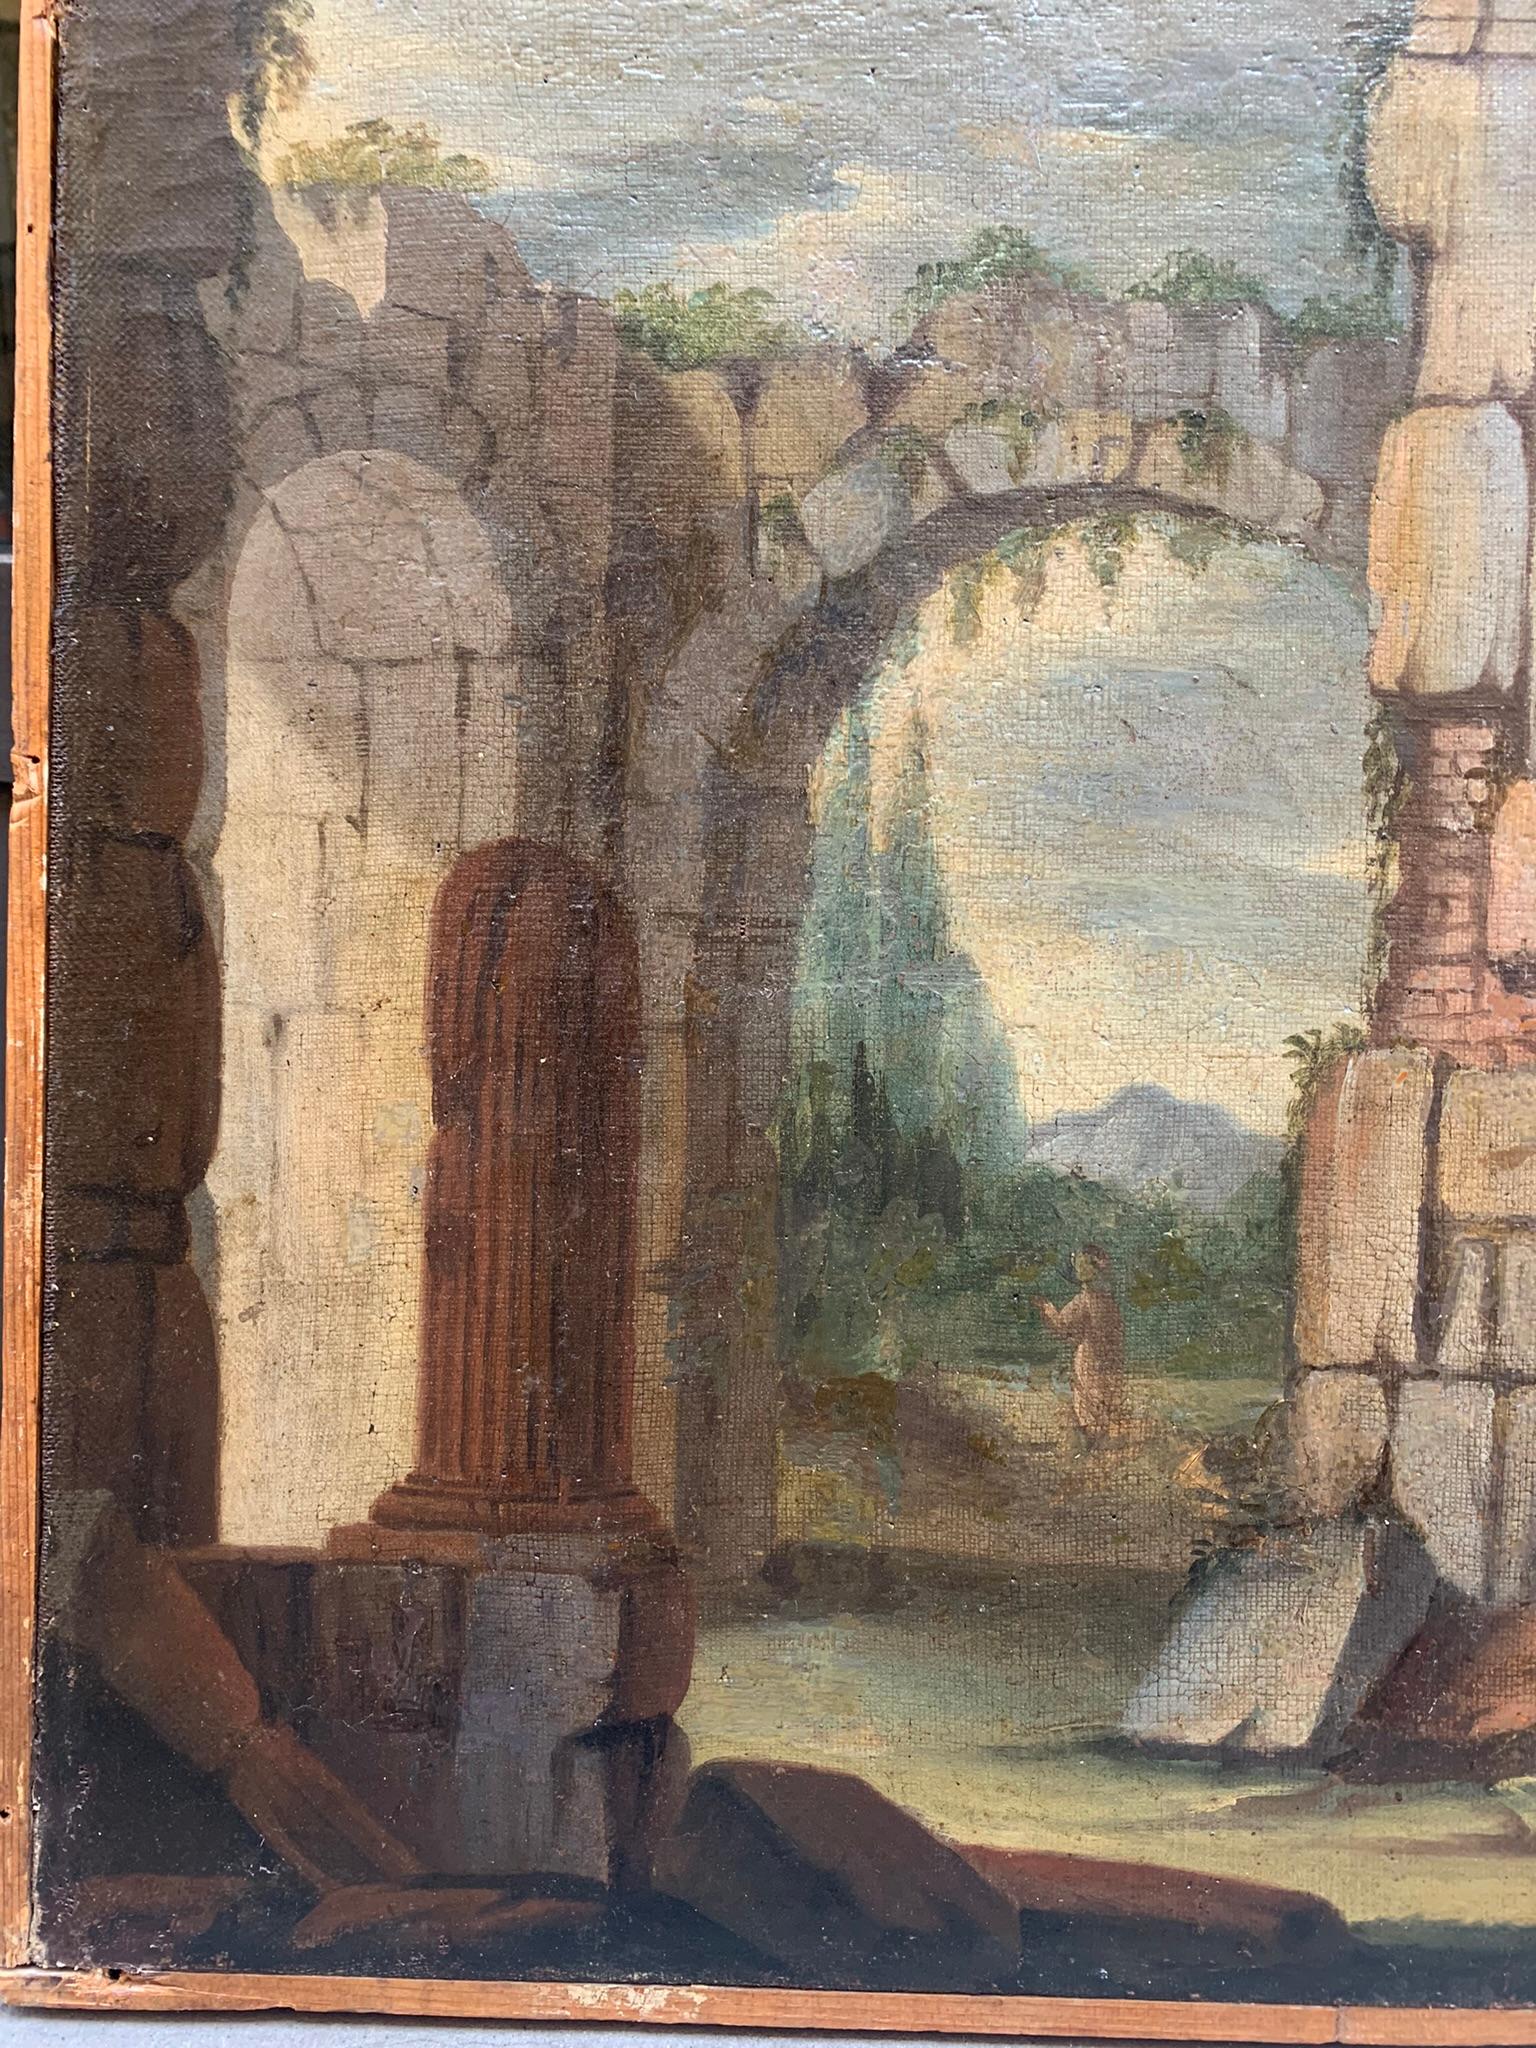 Architektonische Launenhaftigkeit mit römischen Ruinen, Säulen und antiken Bögen.  – Painting von Unknown